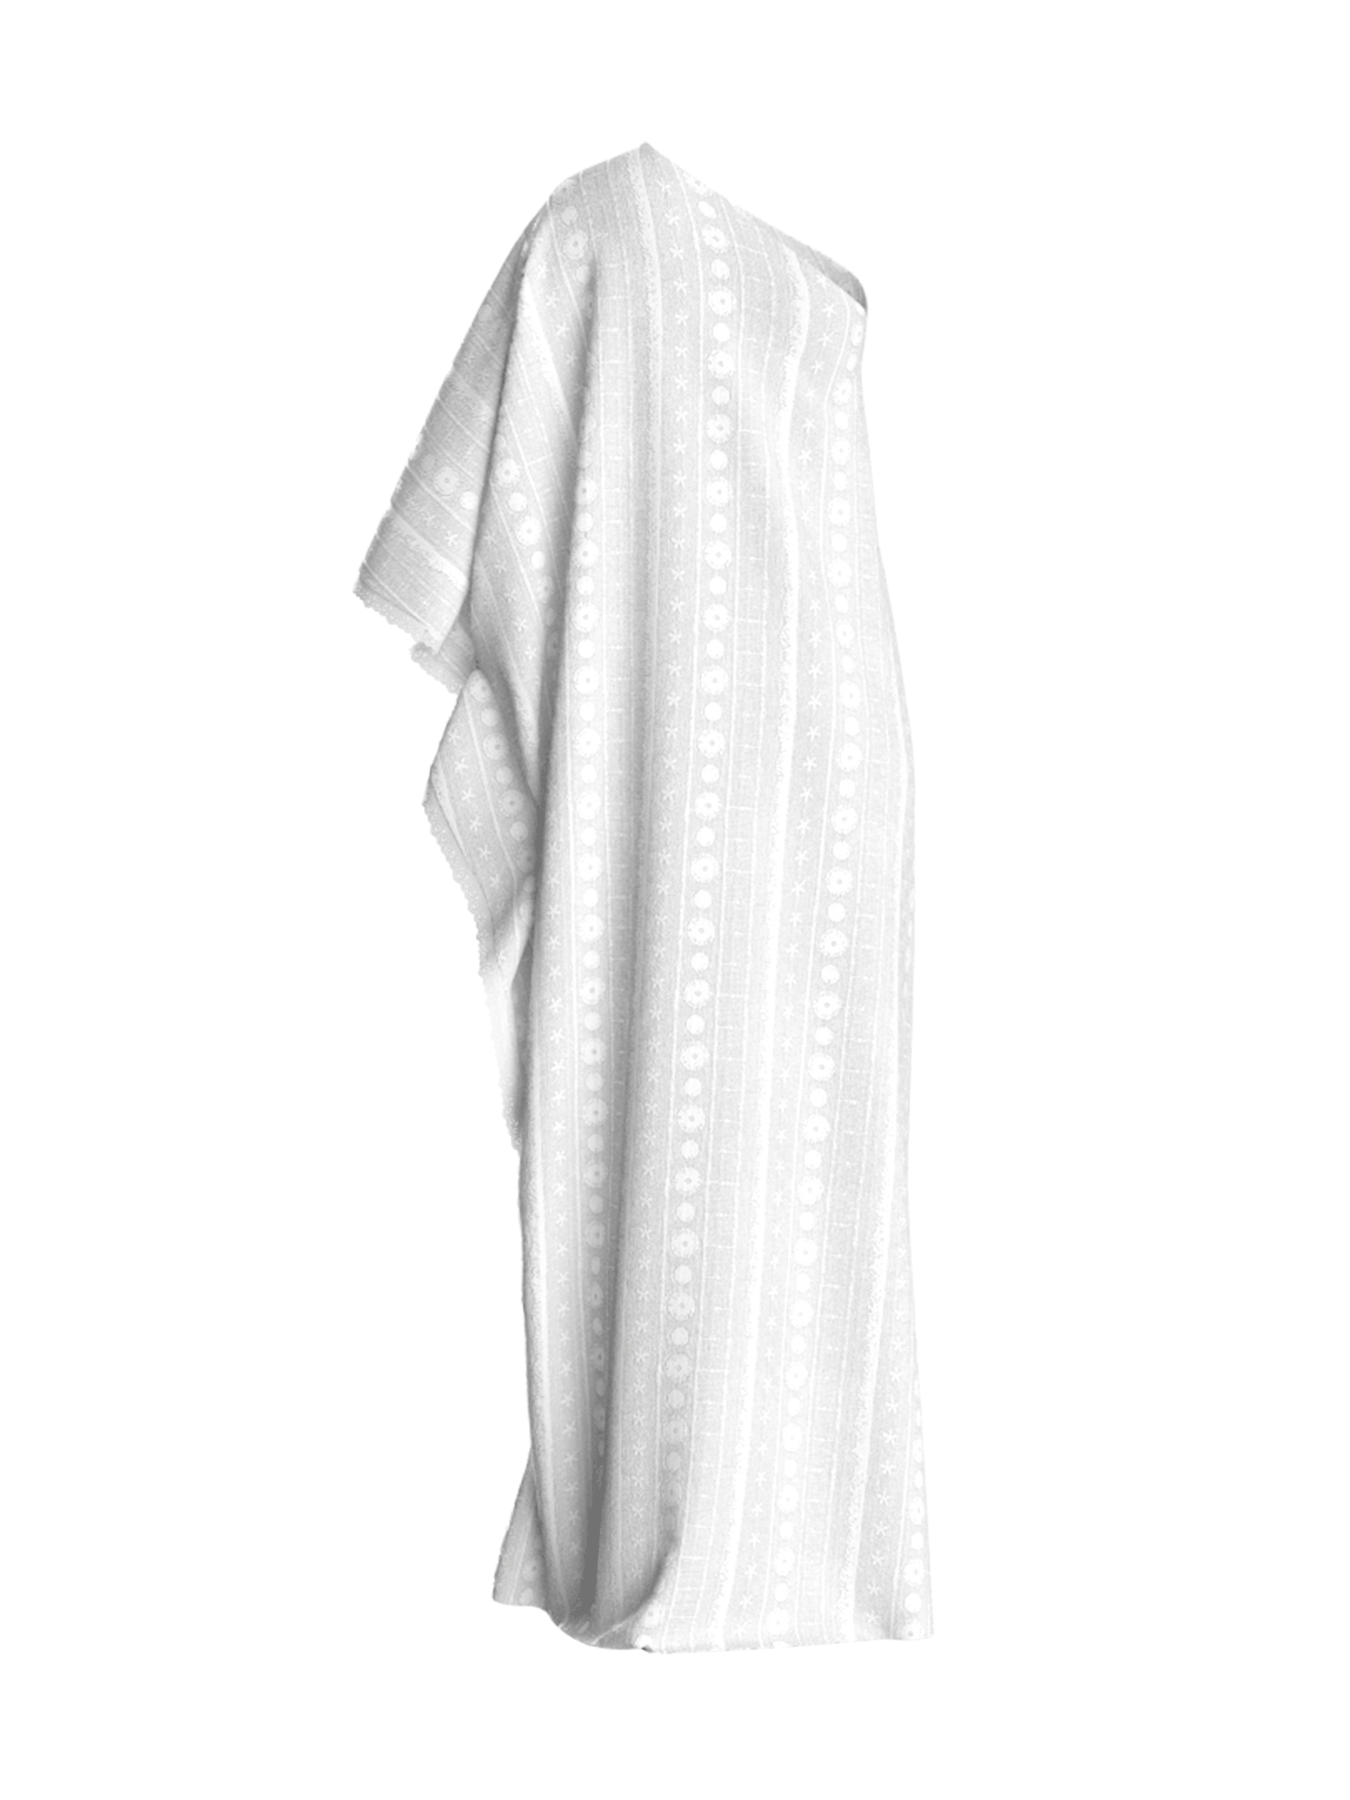 Satu Dress - Bahar Blanc